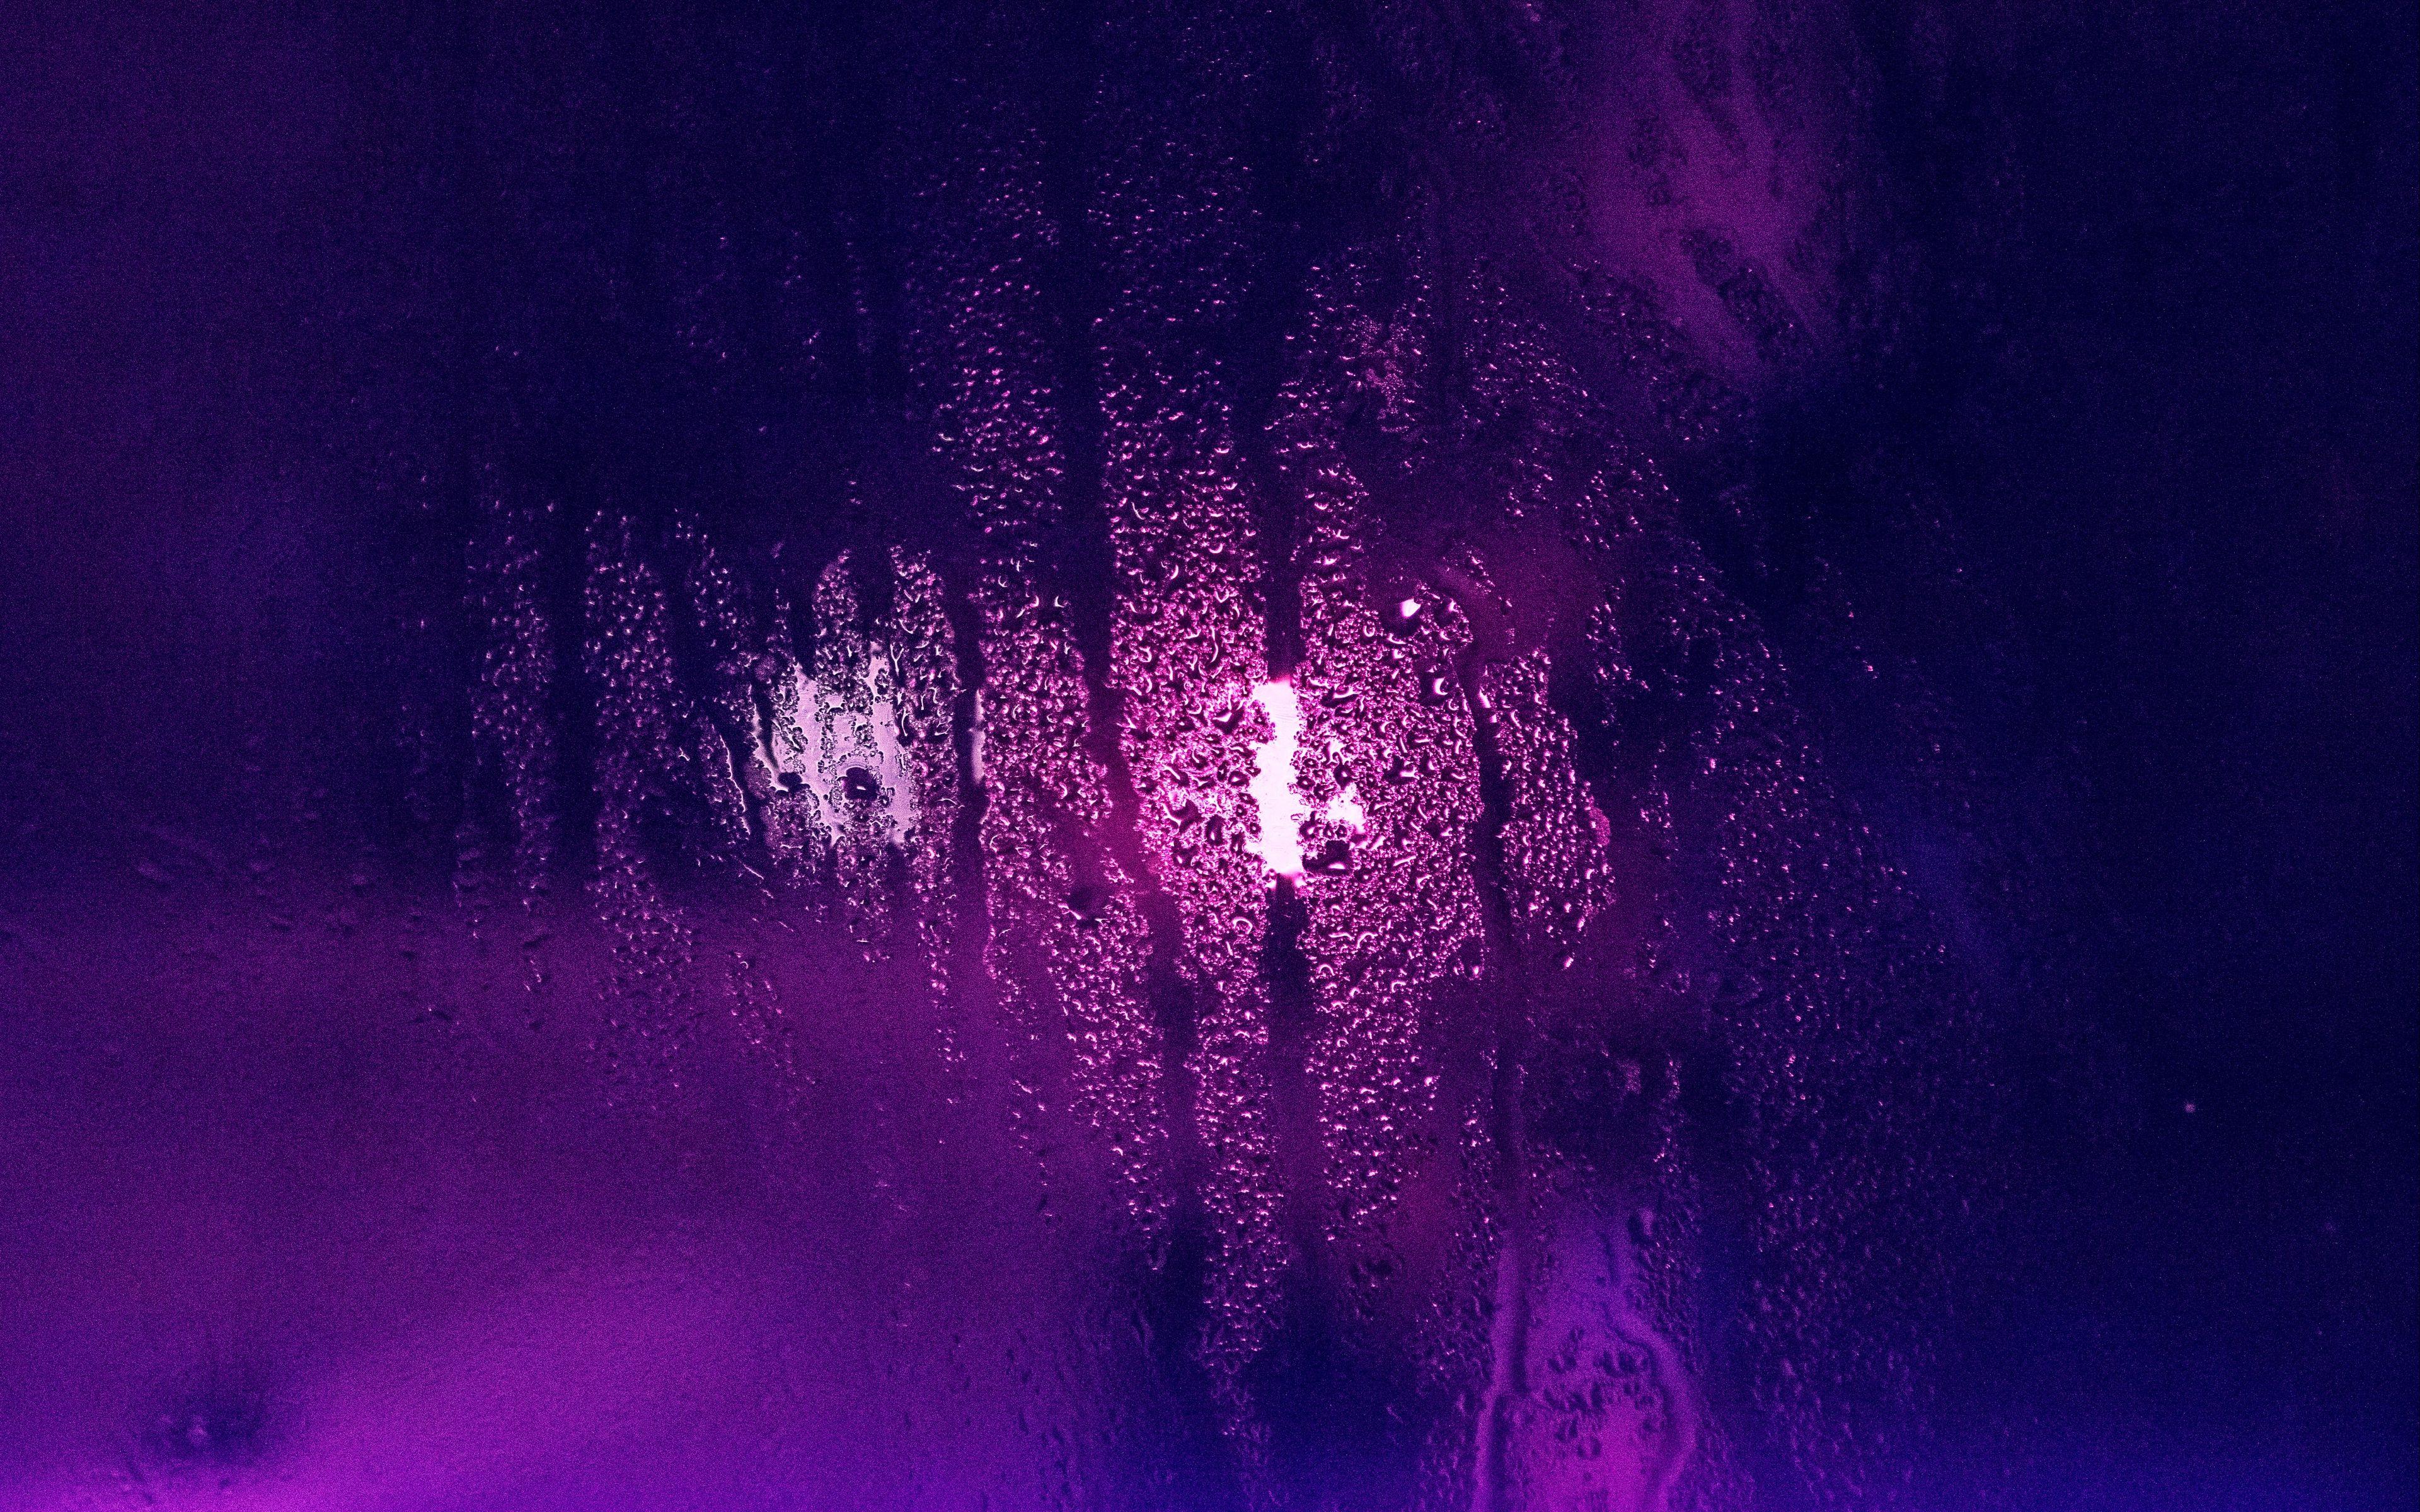  4K  Purple  Wallpapers  Top Free 4K  Purple  Backgrounds  